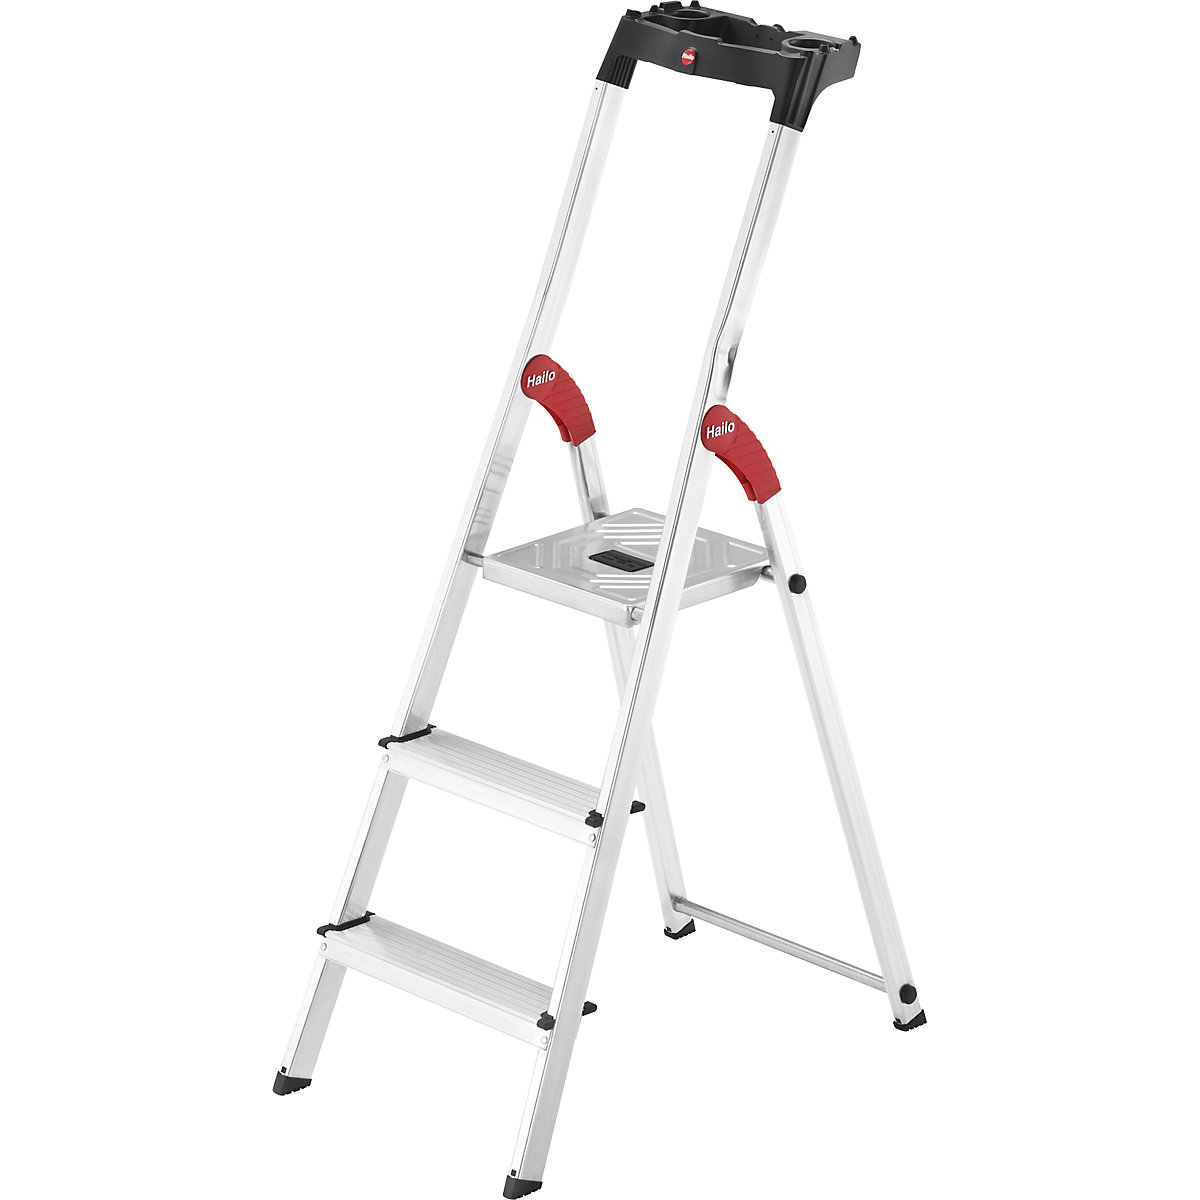 Aluminijasta dvokraka lestev s stopnicami StandardLine L60 – Hailo, nosilnost 150 kg, 3 stopnice